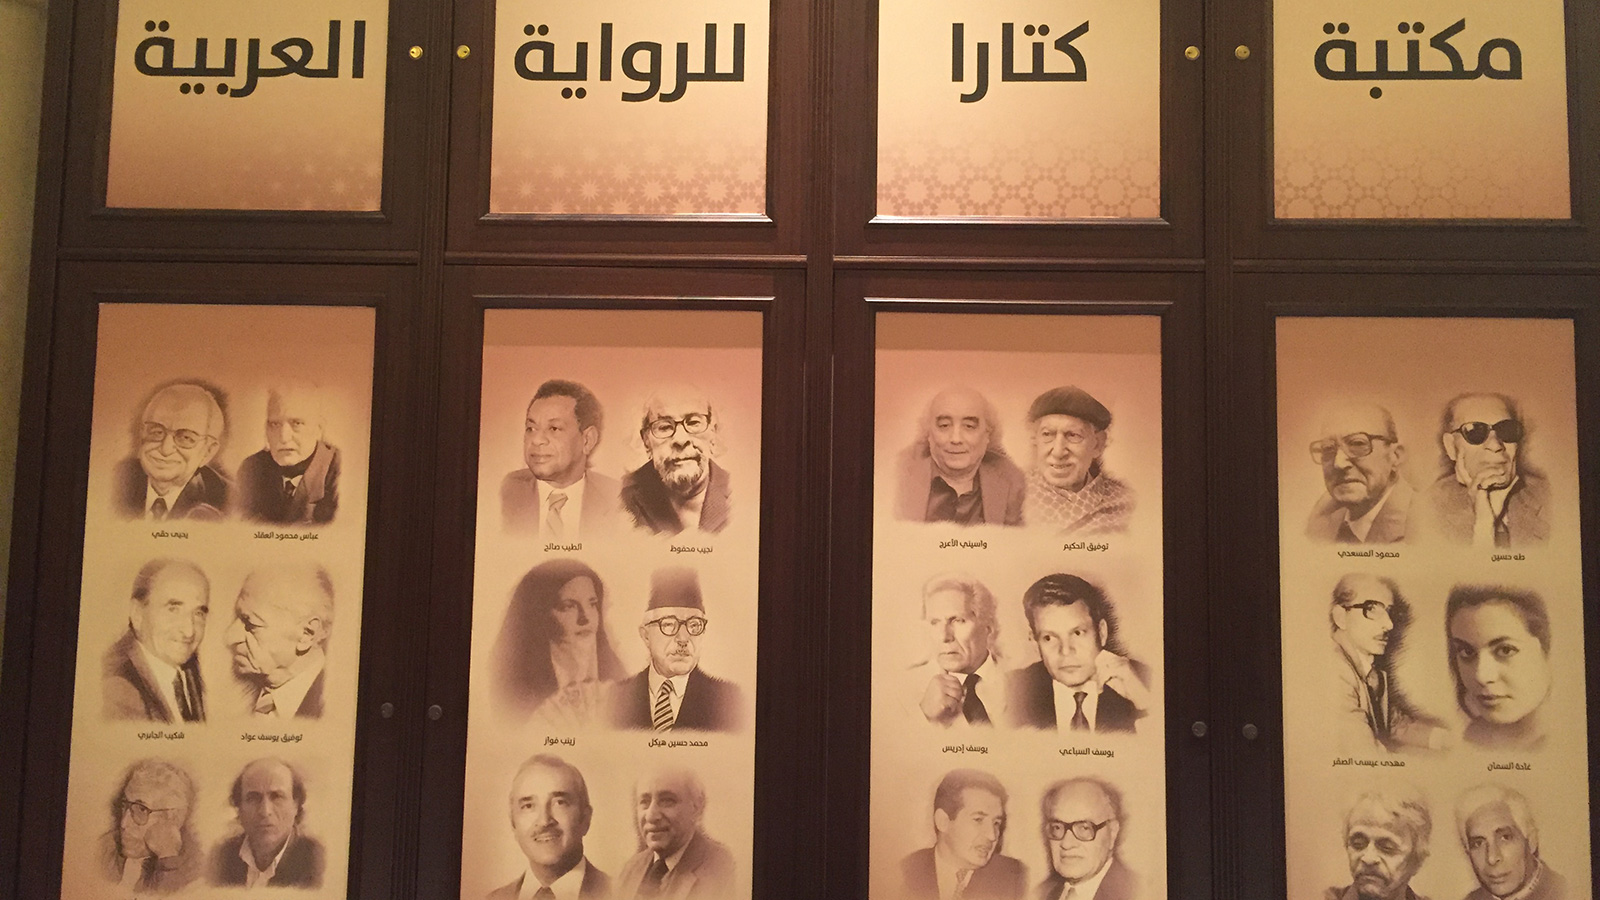 مكتبة كتارا للرواية العربية ستكون فضاء مفتوحا أمام القراء طيلة العام (الجزيرة)